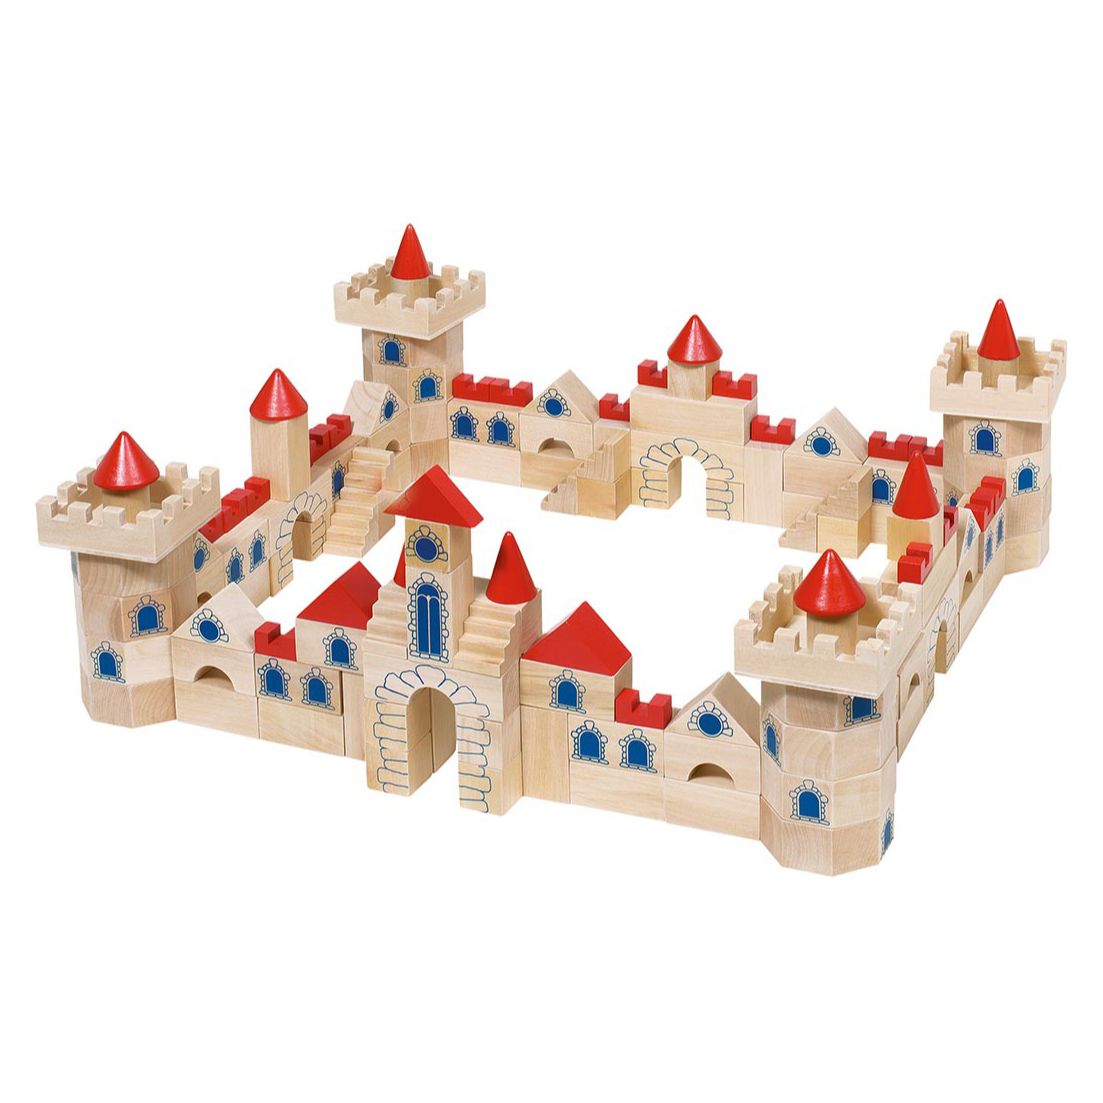 Location des jouets - Jeu de construction - Chateau